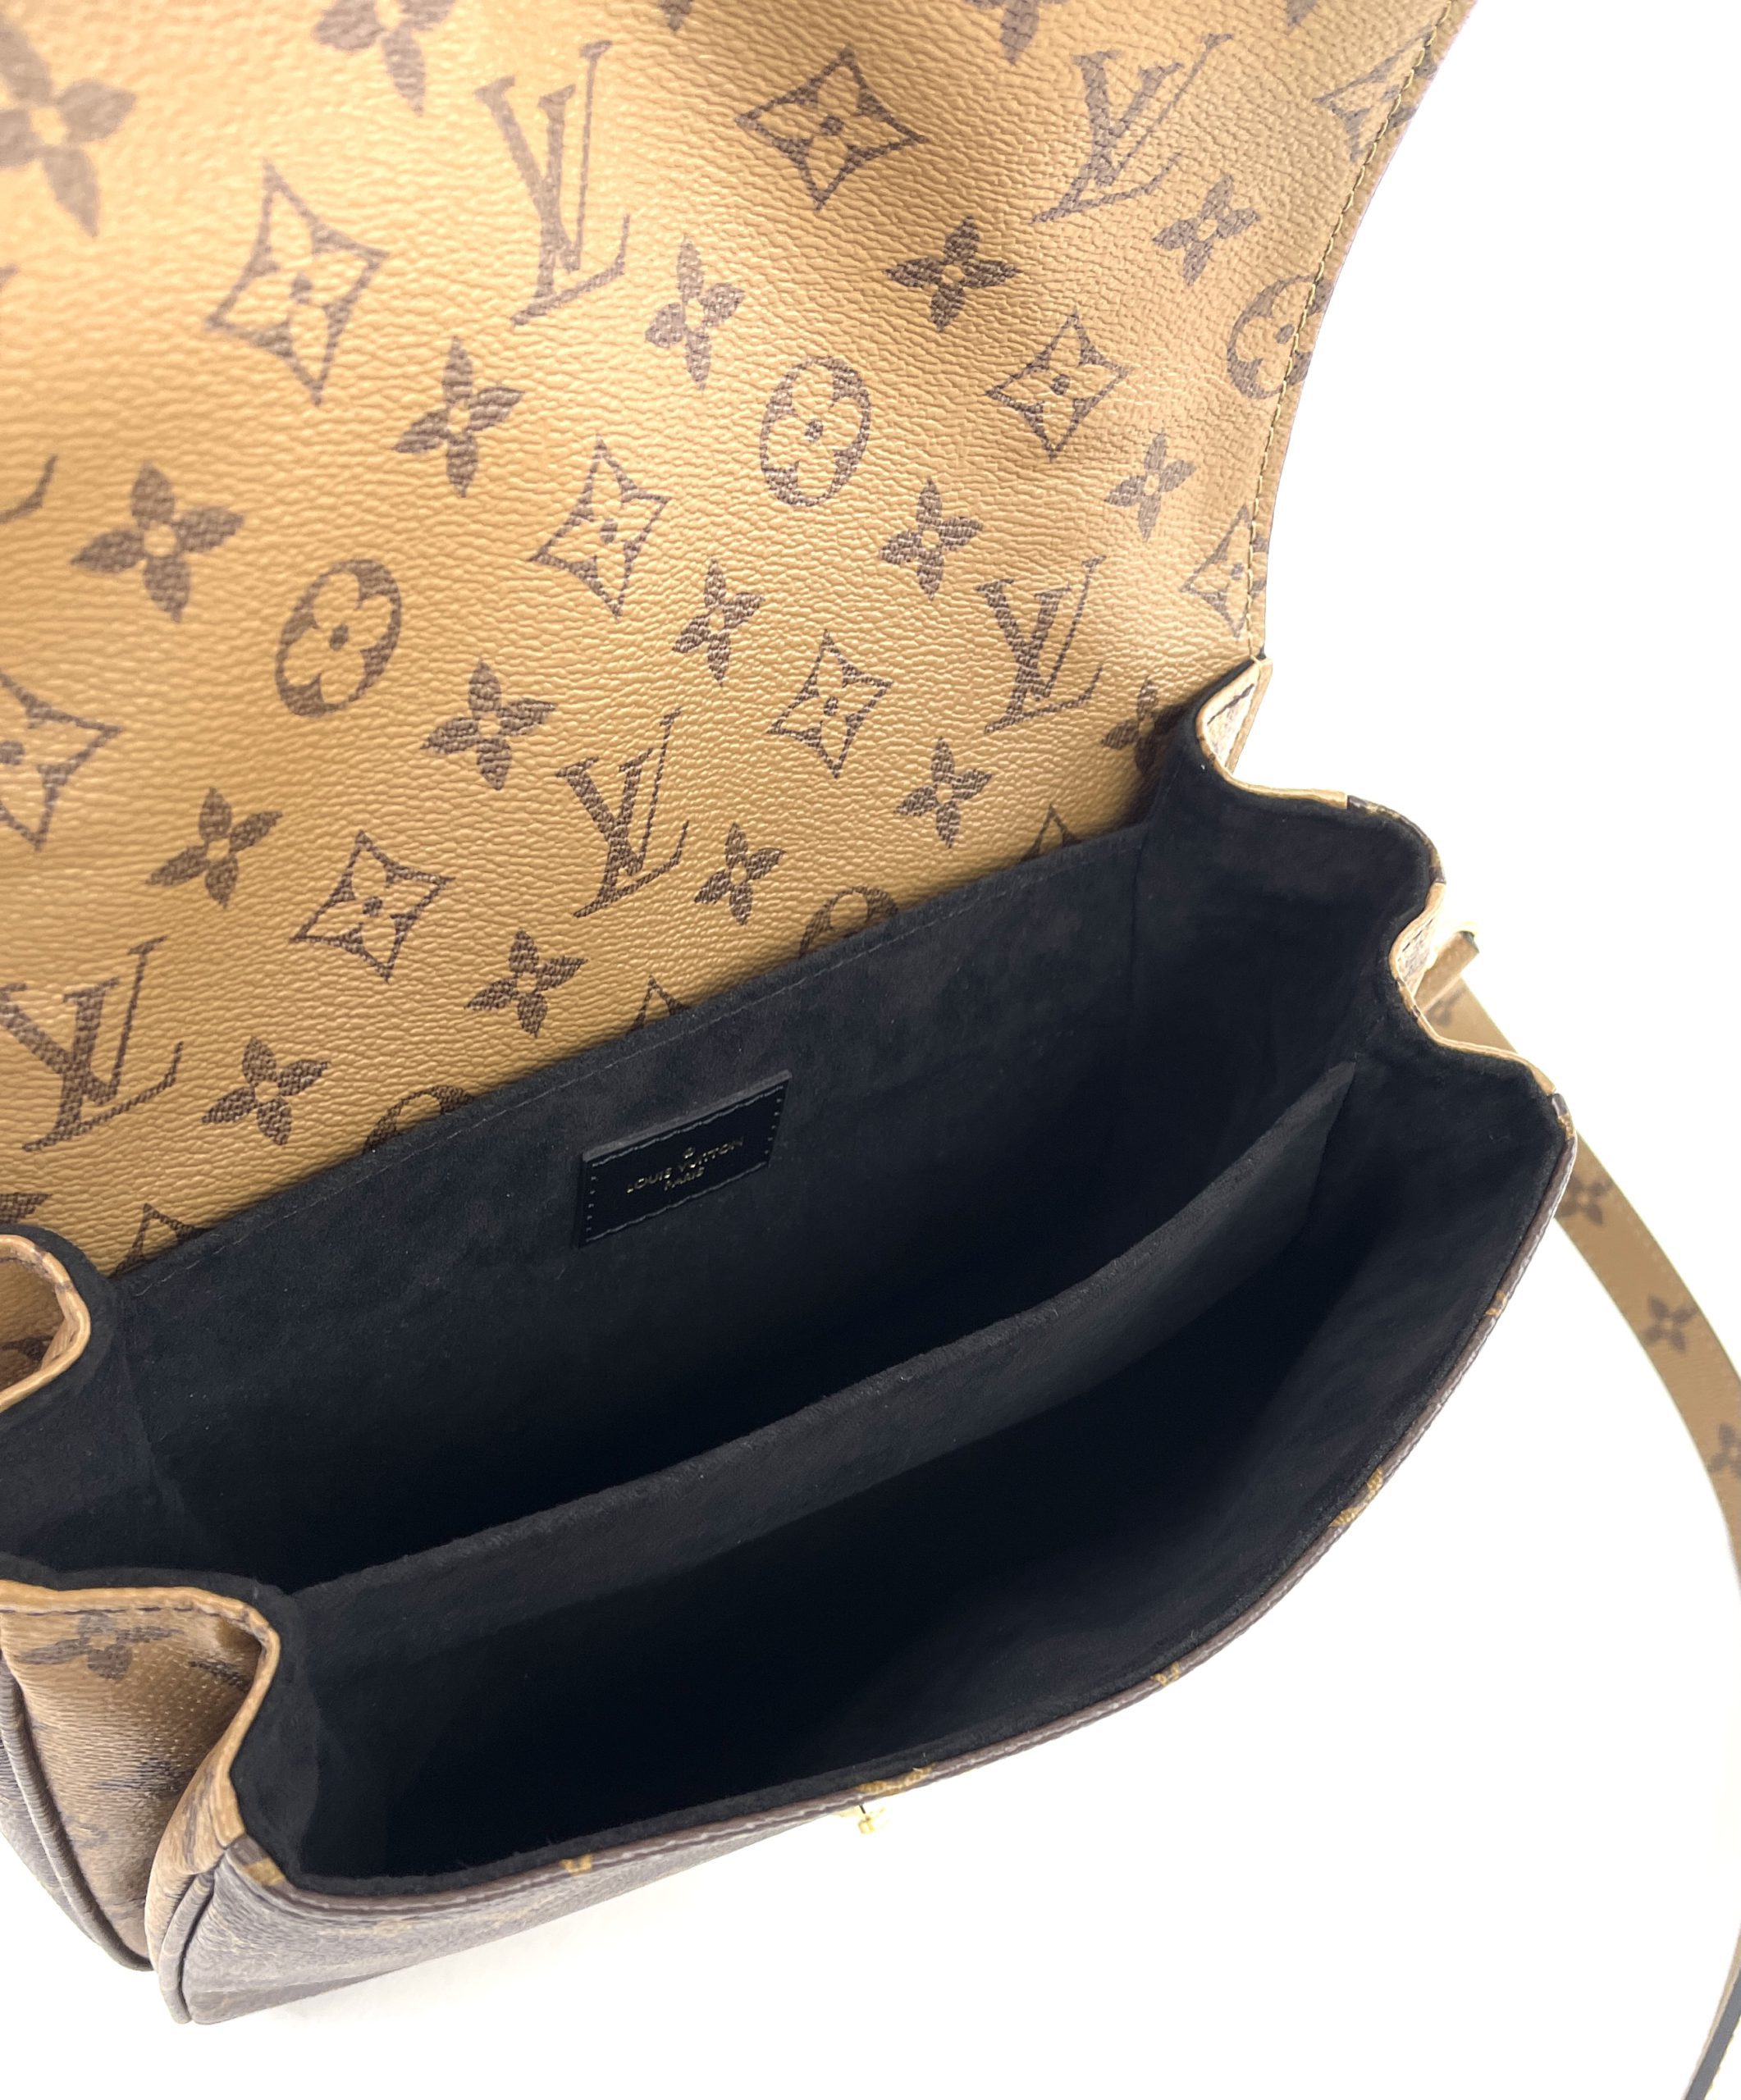 NEW* Louis Vuitton Pochette Métis Reverse Monogram 🤩